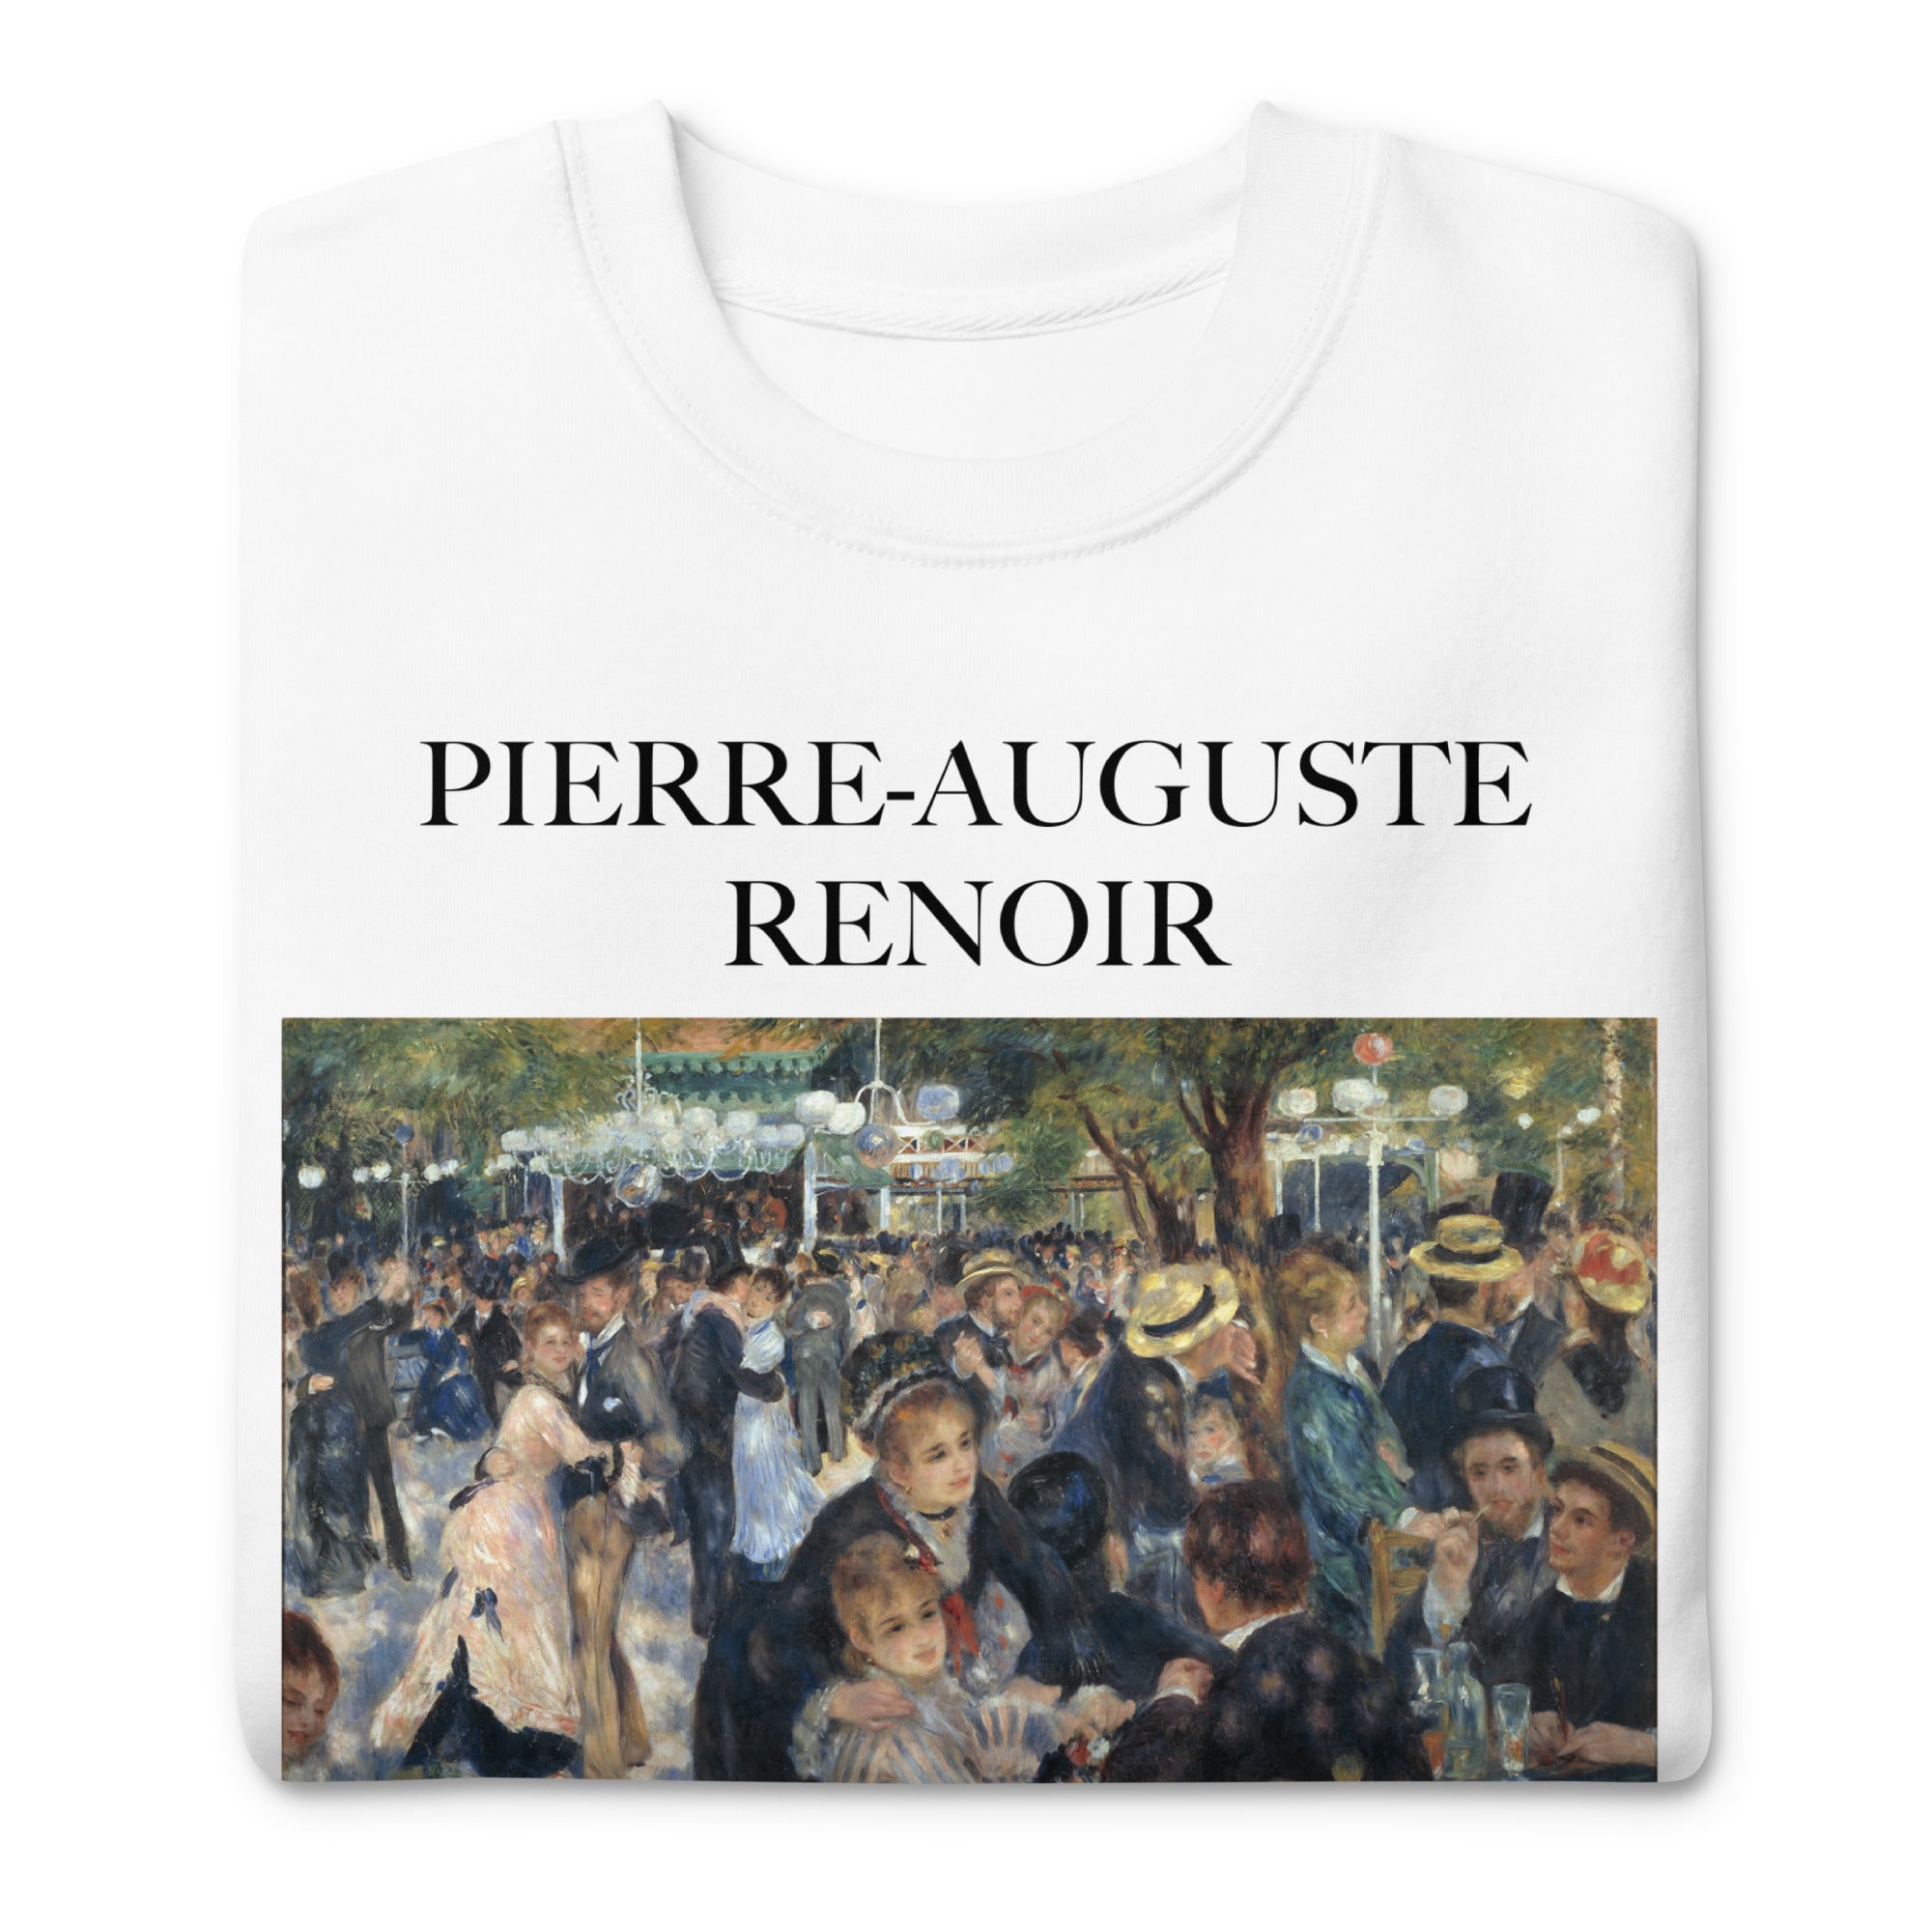 Pierre-Auguste Renoir 'Dance at Le Moulin de la Galette' Famous Painting Sweatshirt | Unisex Premium Sweatshirt